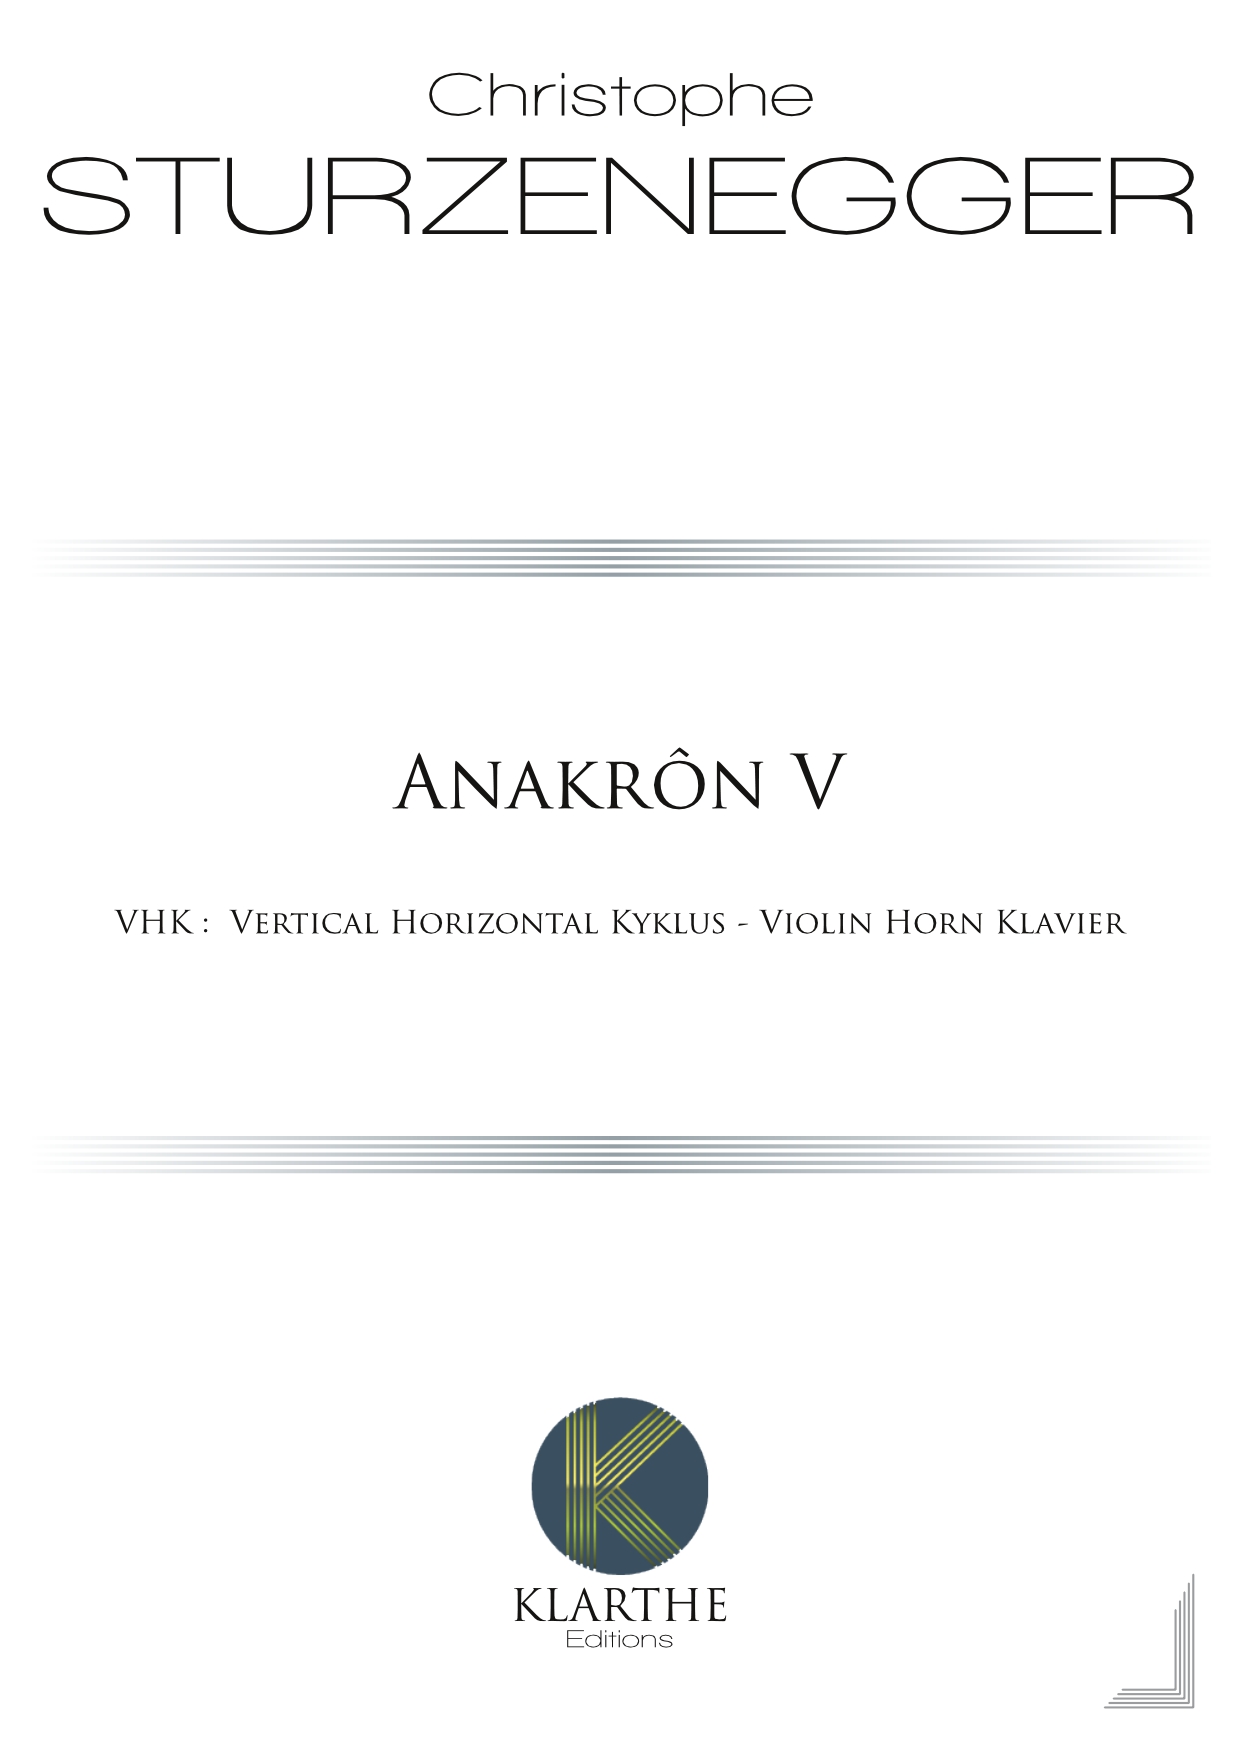 Anakr�n V (STURZENEGGER CHRISTOPHE)